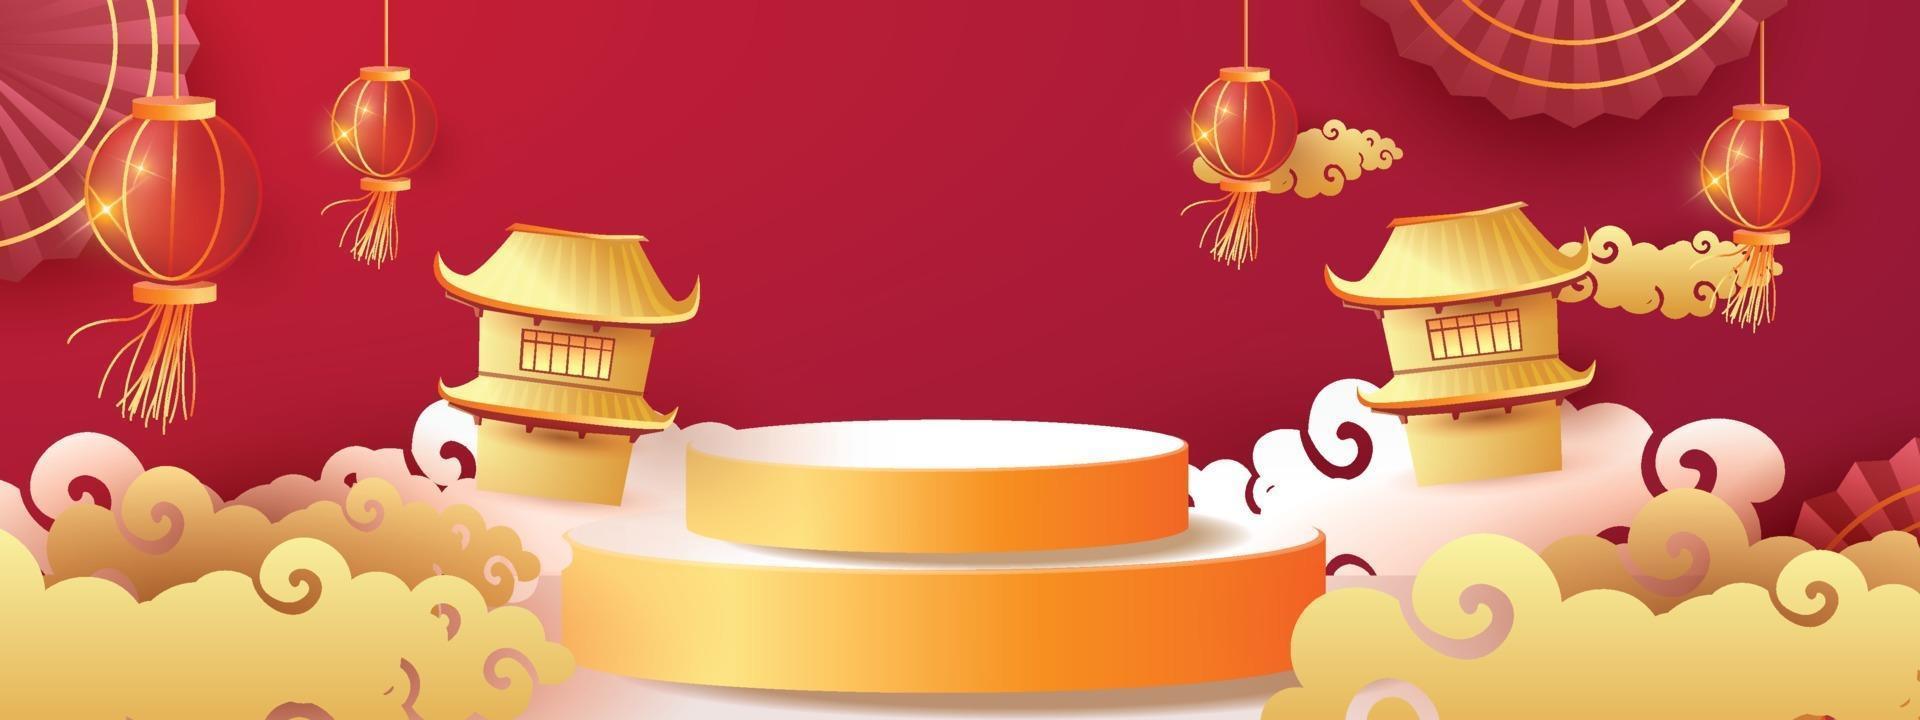 Podium Runde Bühne Podium und Papierkunst Chinesisches Neujahr, Happy Festival Chinesische Tradition Podium für Beauty Branding Kosmetik oder jedes Produkt. Konzept einkaufen. vektor